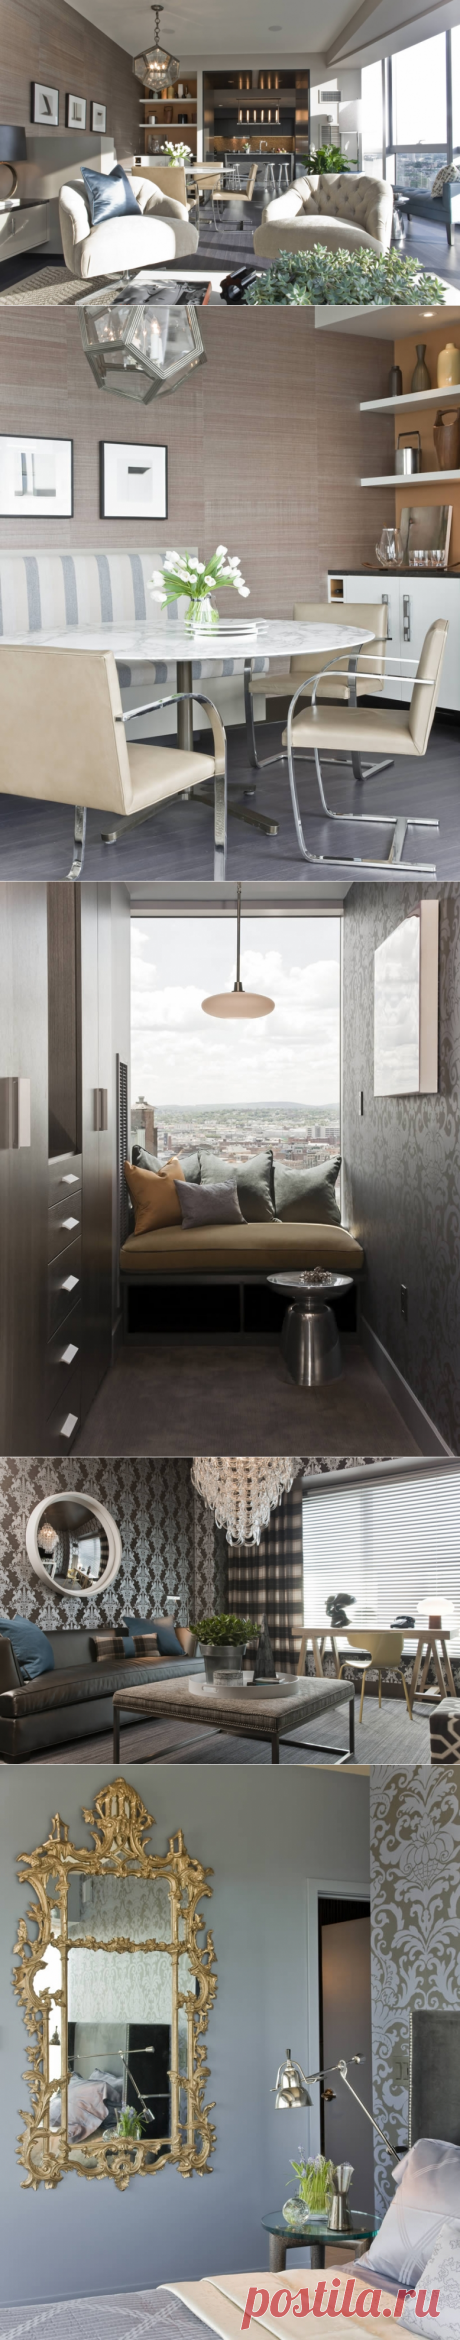 W Hotel Residences от Terrat Elms Interior Design - Дизайн интерьеров | Идеи вашего дома | Lodgers